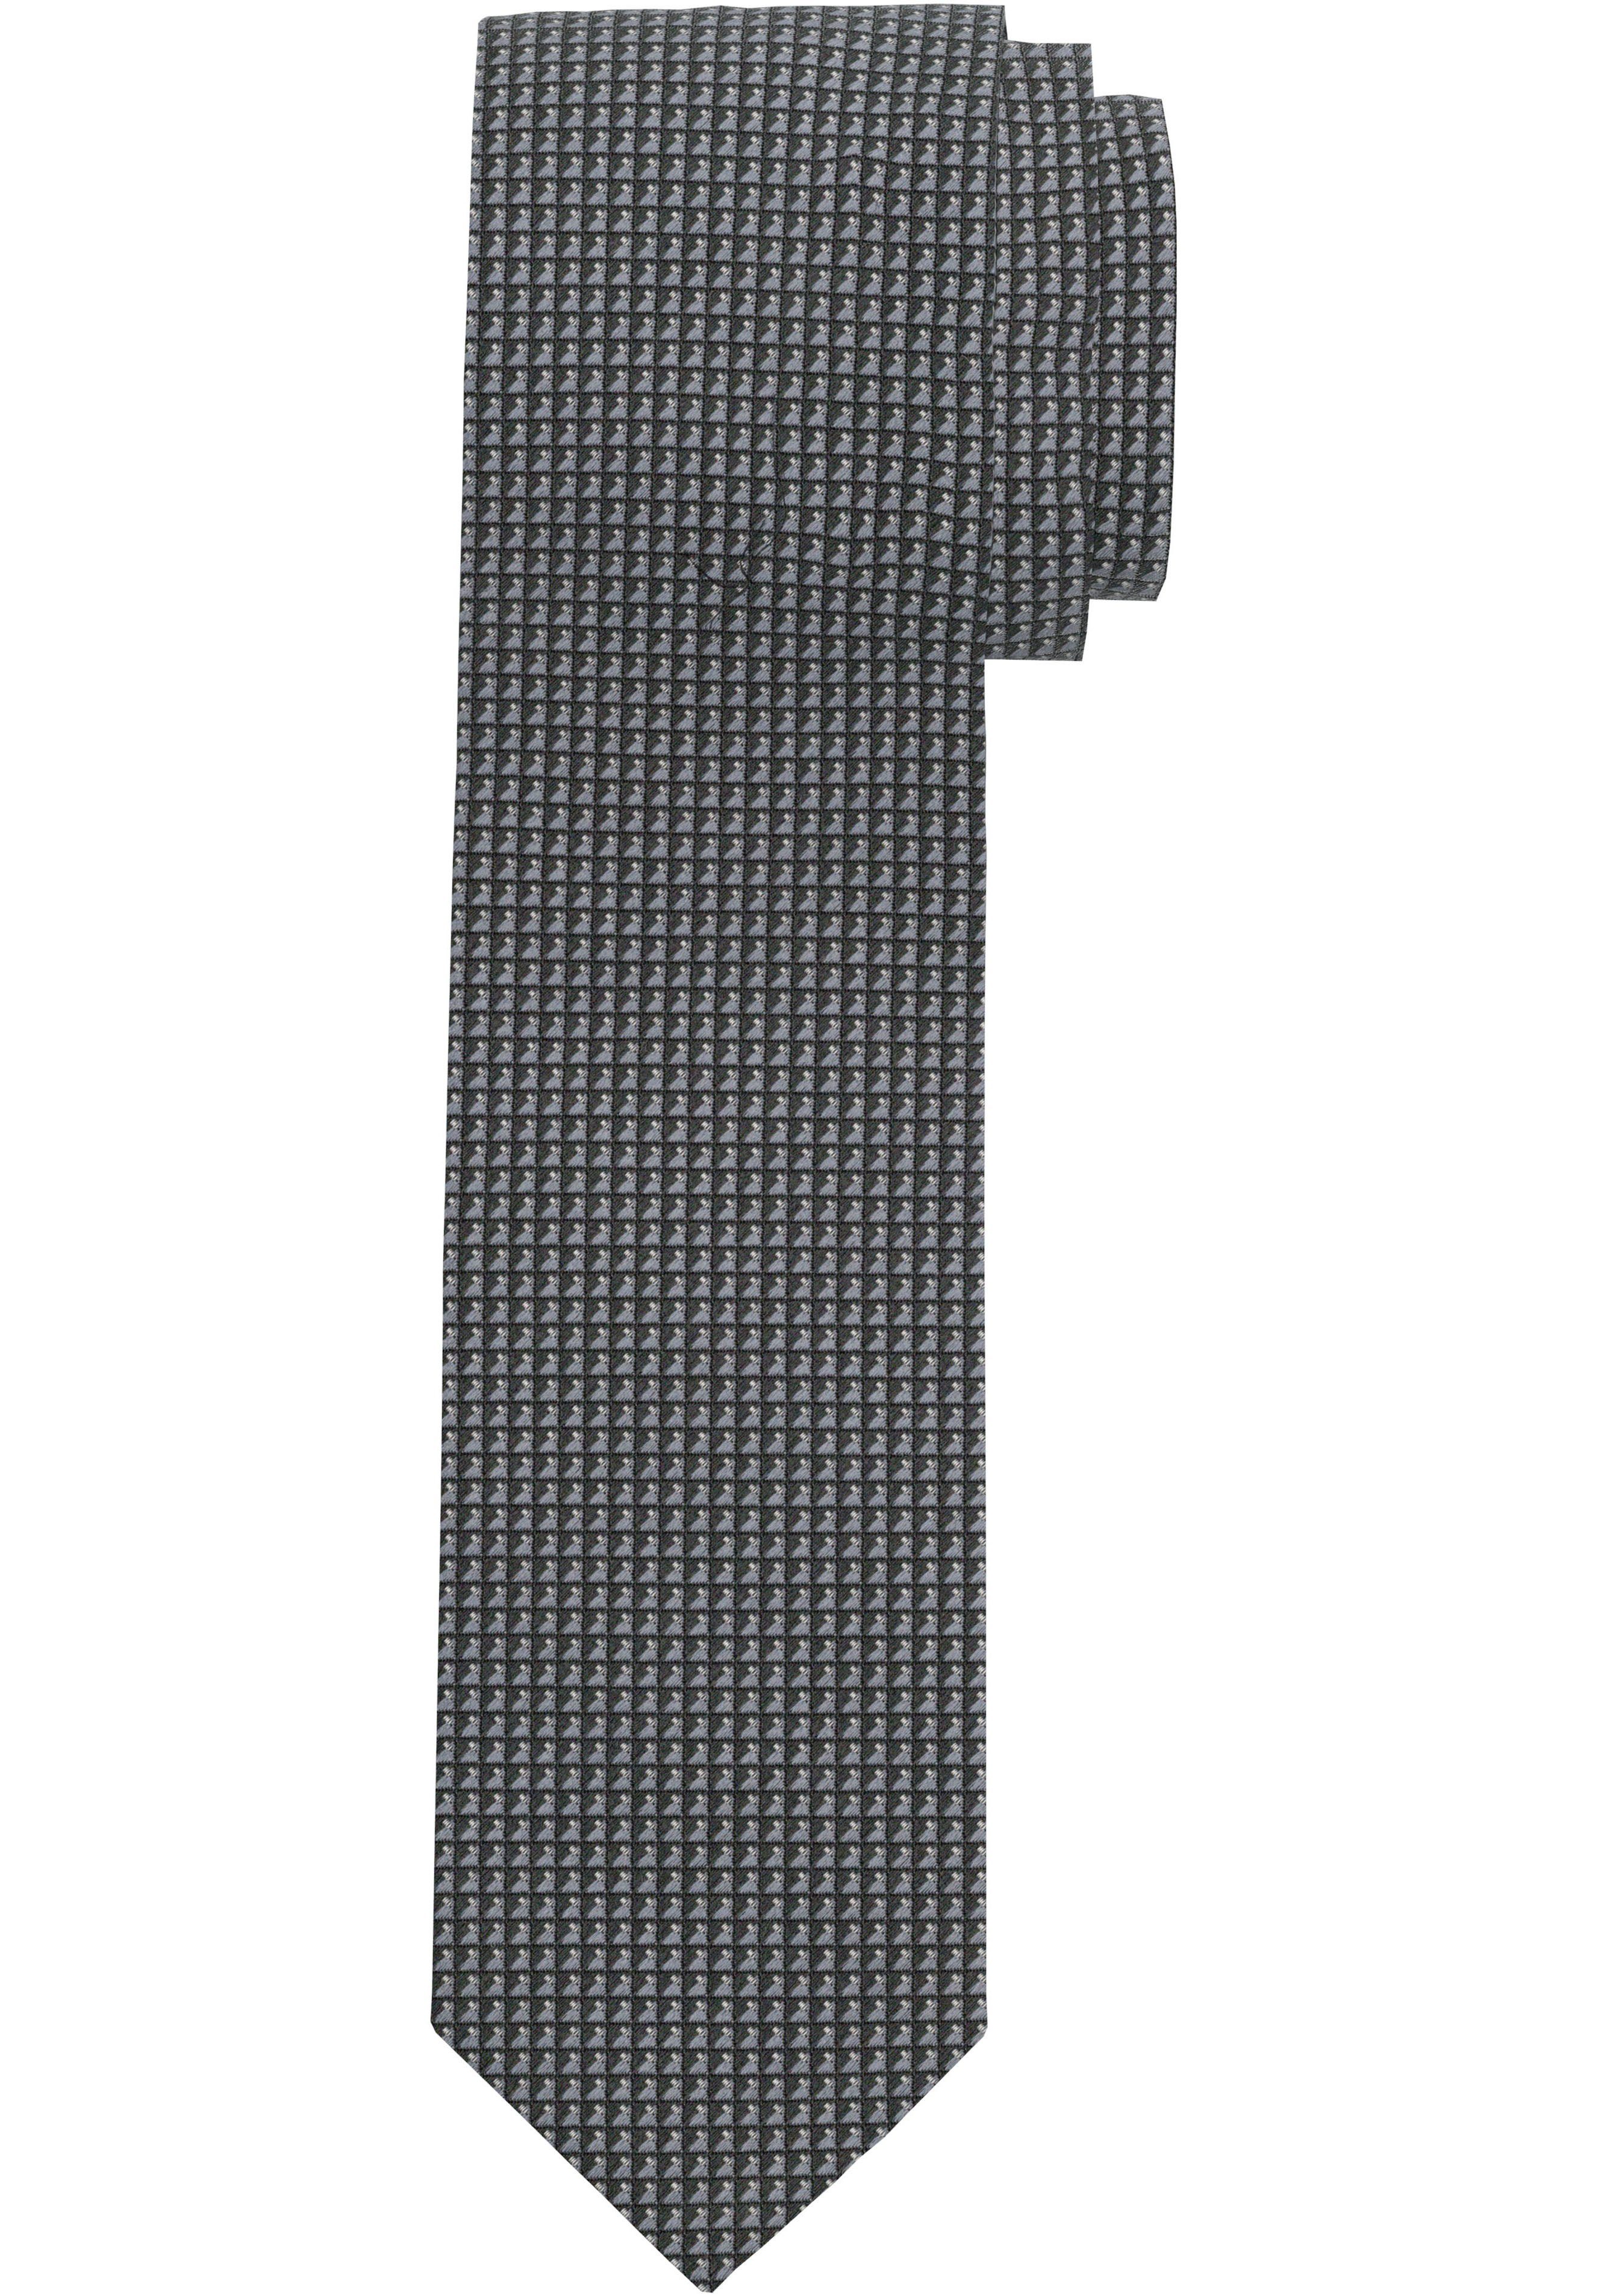 OLYMP Krawatte Strukturierte Krawatte grau